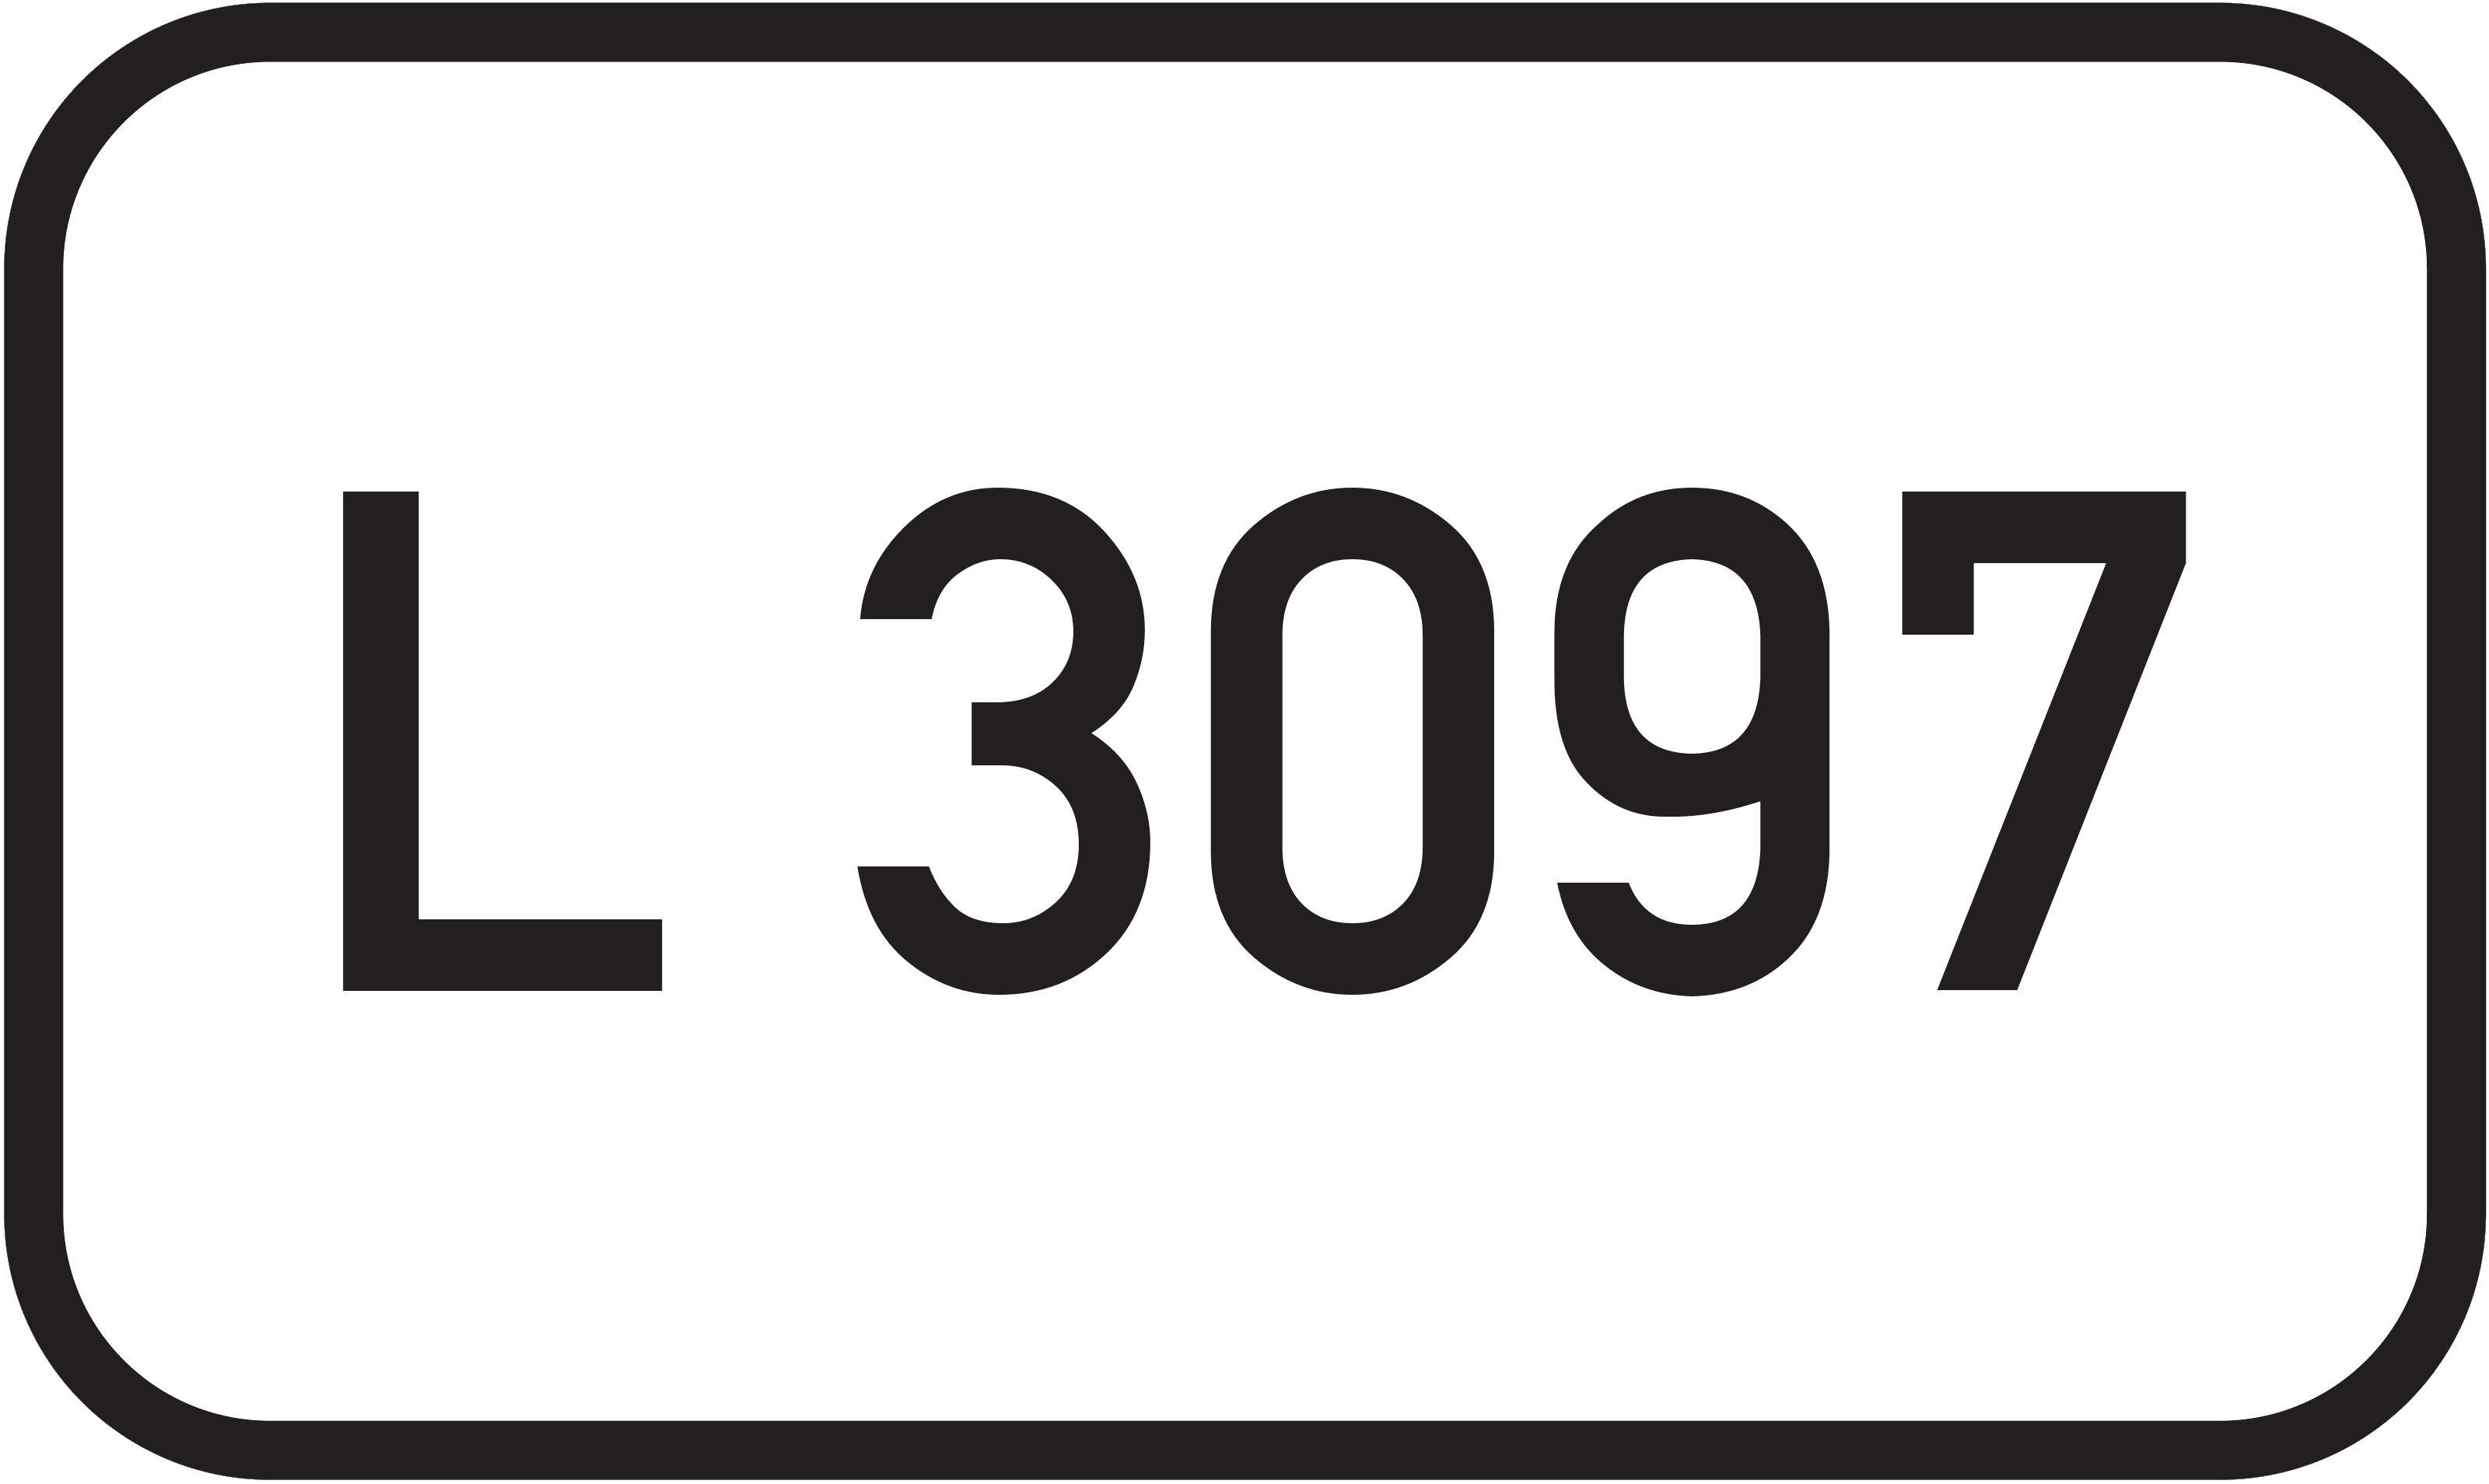 Landesstraße L 3097